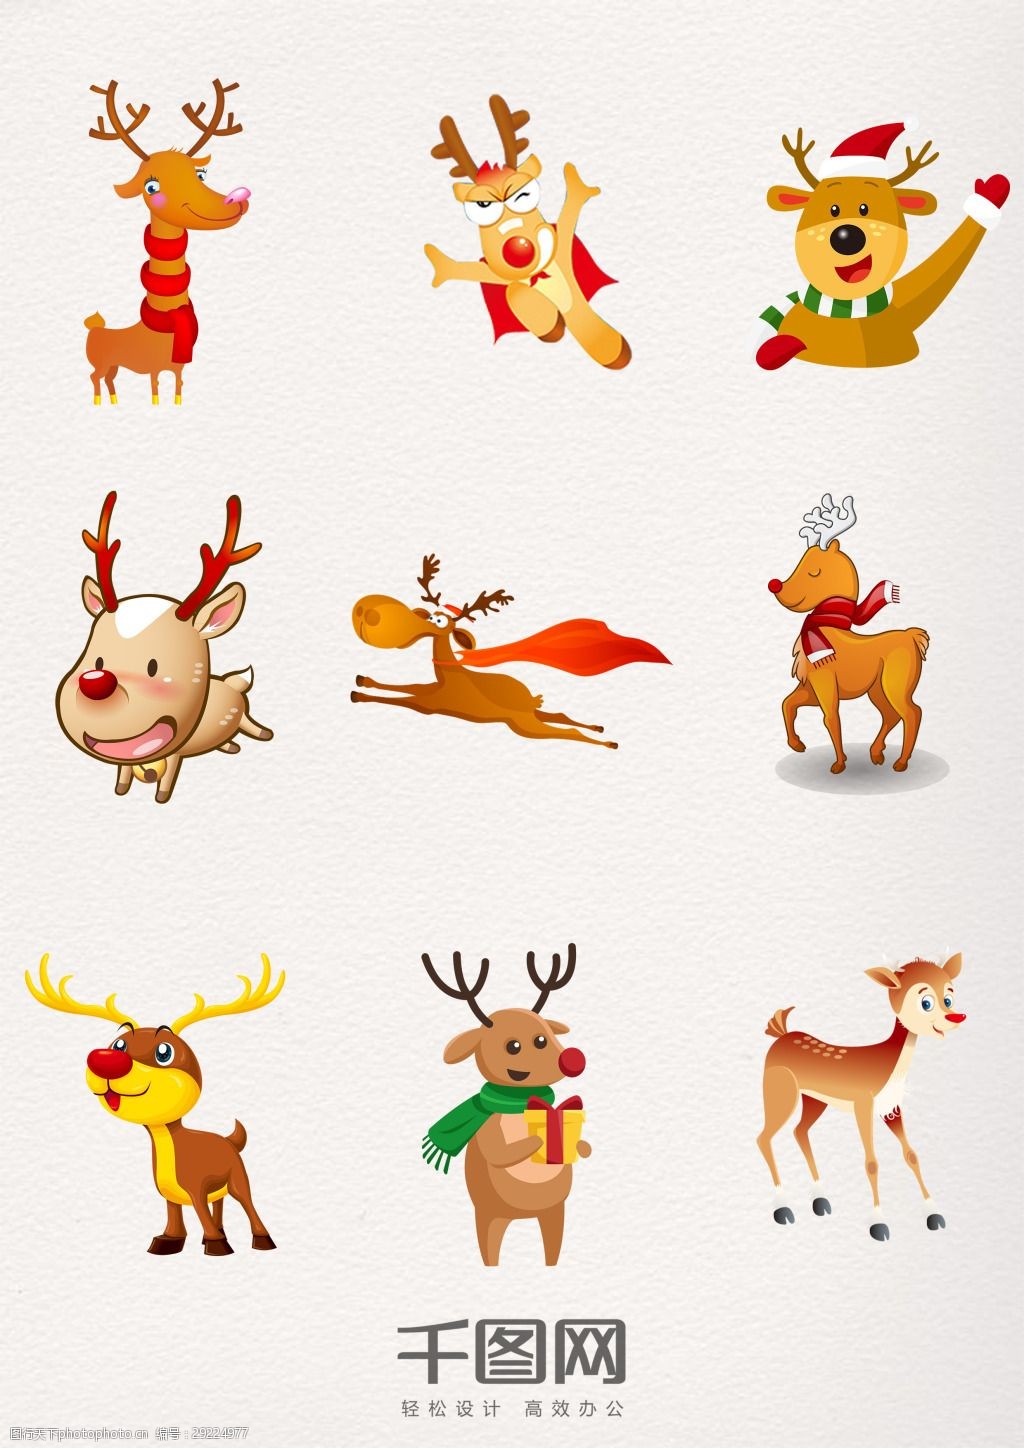 卡通 可爱 手绘 圣诞节 奔跑 小鹿 圣诞驯鹿 卡通鹿 手绘鹿